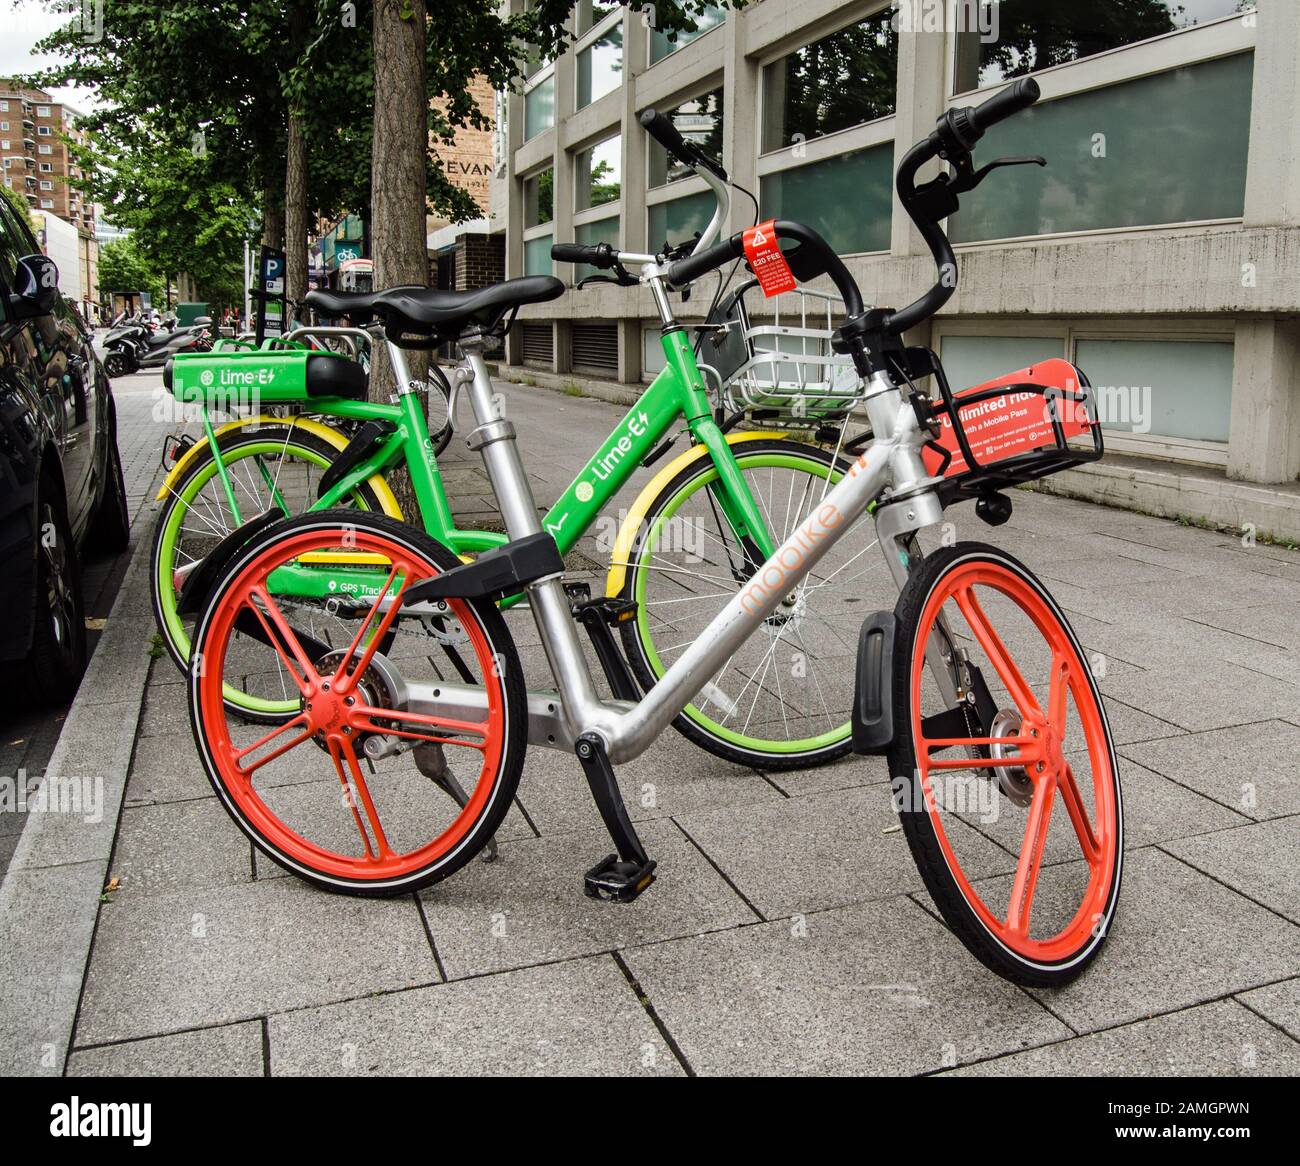 London, Großbritannien - 20. Juli 2019: Mieten Sie Fahrräder der Firmen Lime und Mobike, die auf einem Straßenbelag in Lambeth, London, geparkt sind. Es gibt Bedenken, dass einige bi Stockfoto